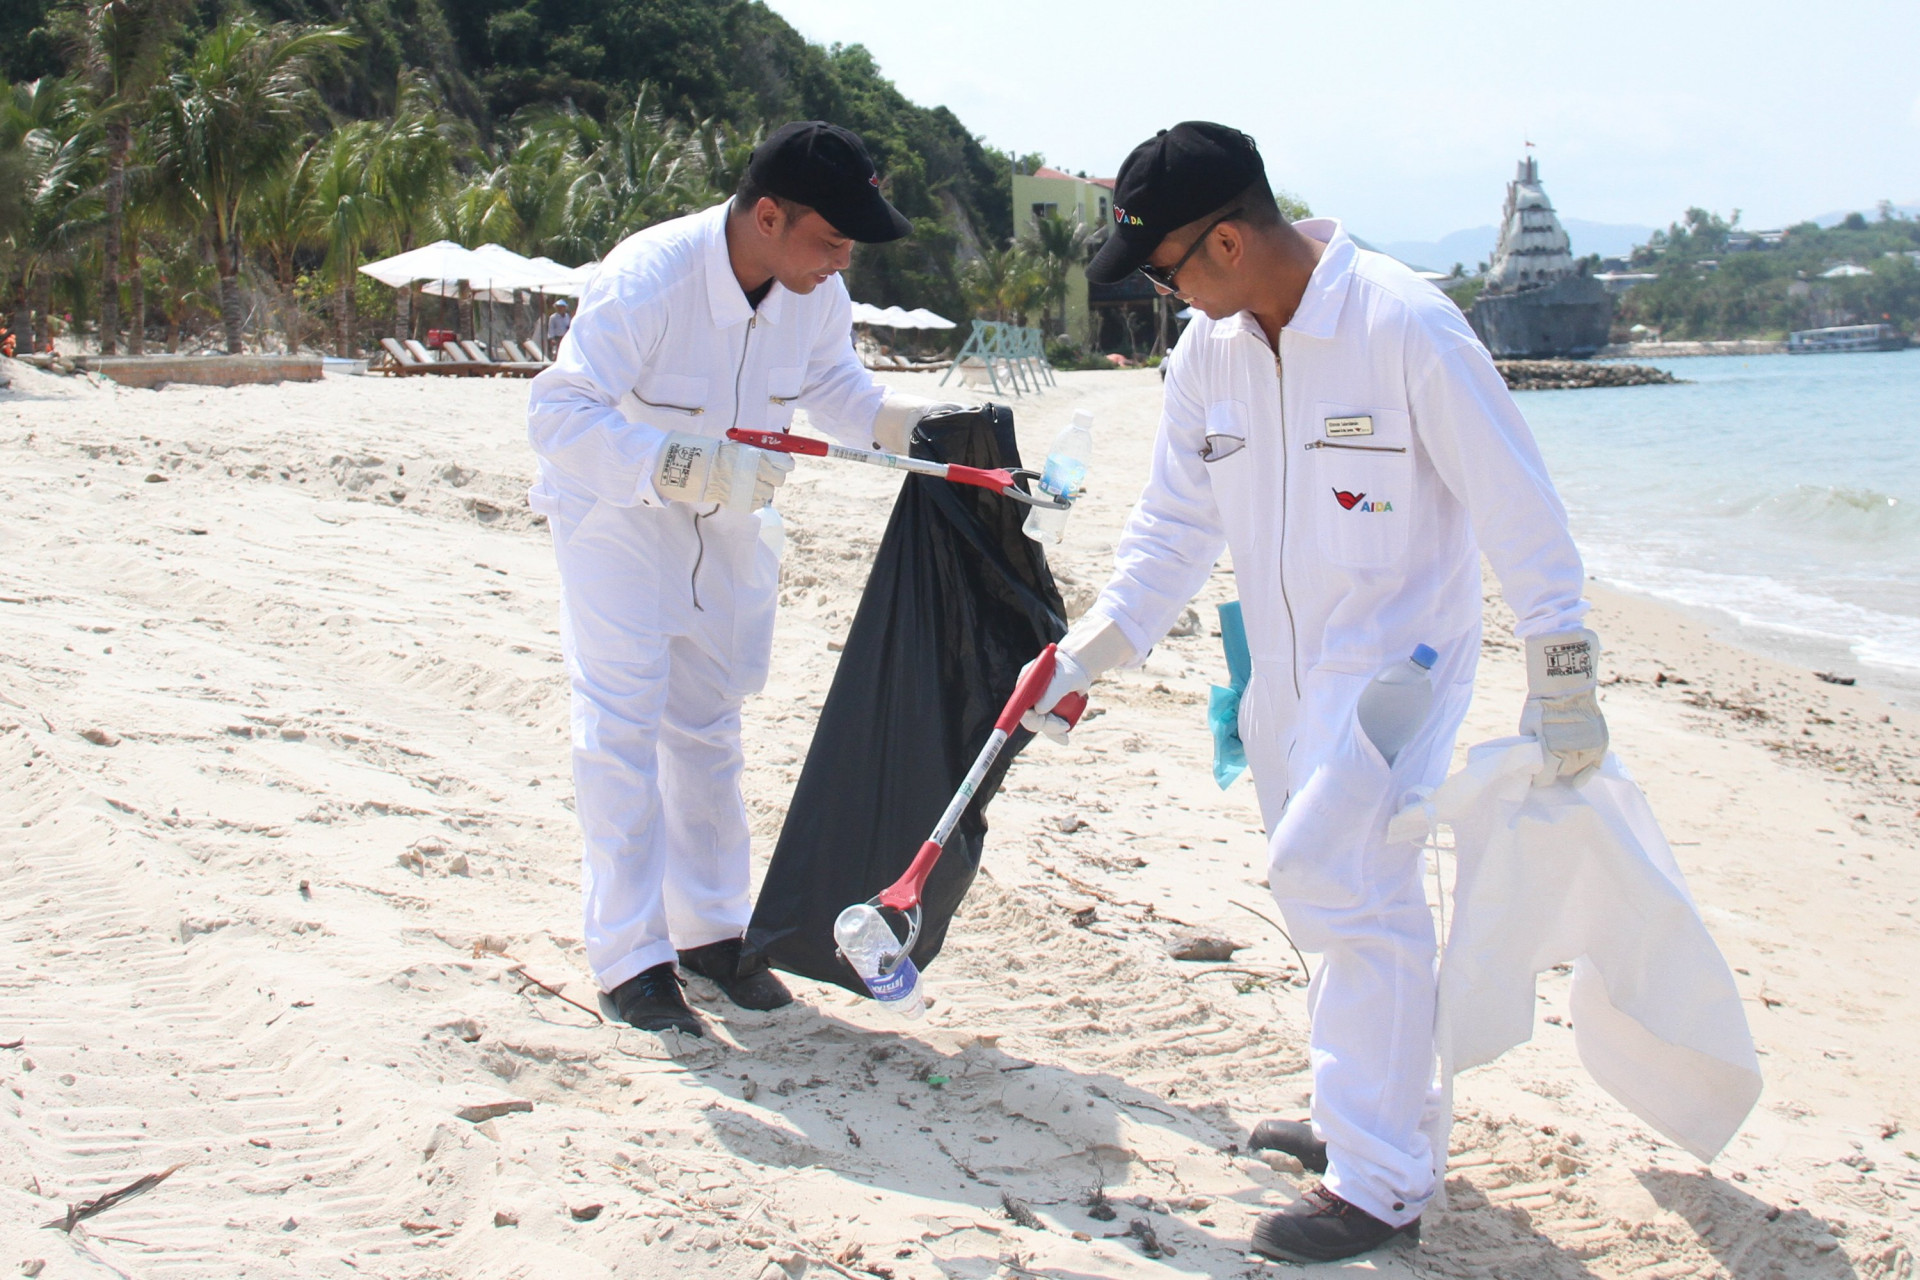 Chai nhựa là một trong những rác thải có nhiều ở bãi biển